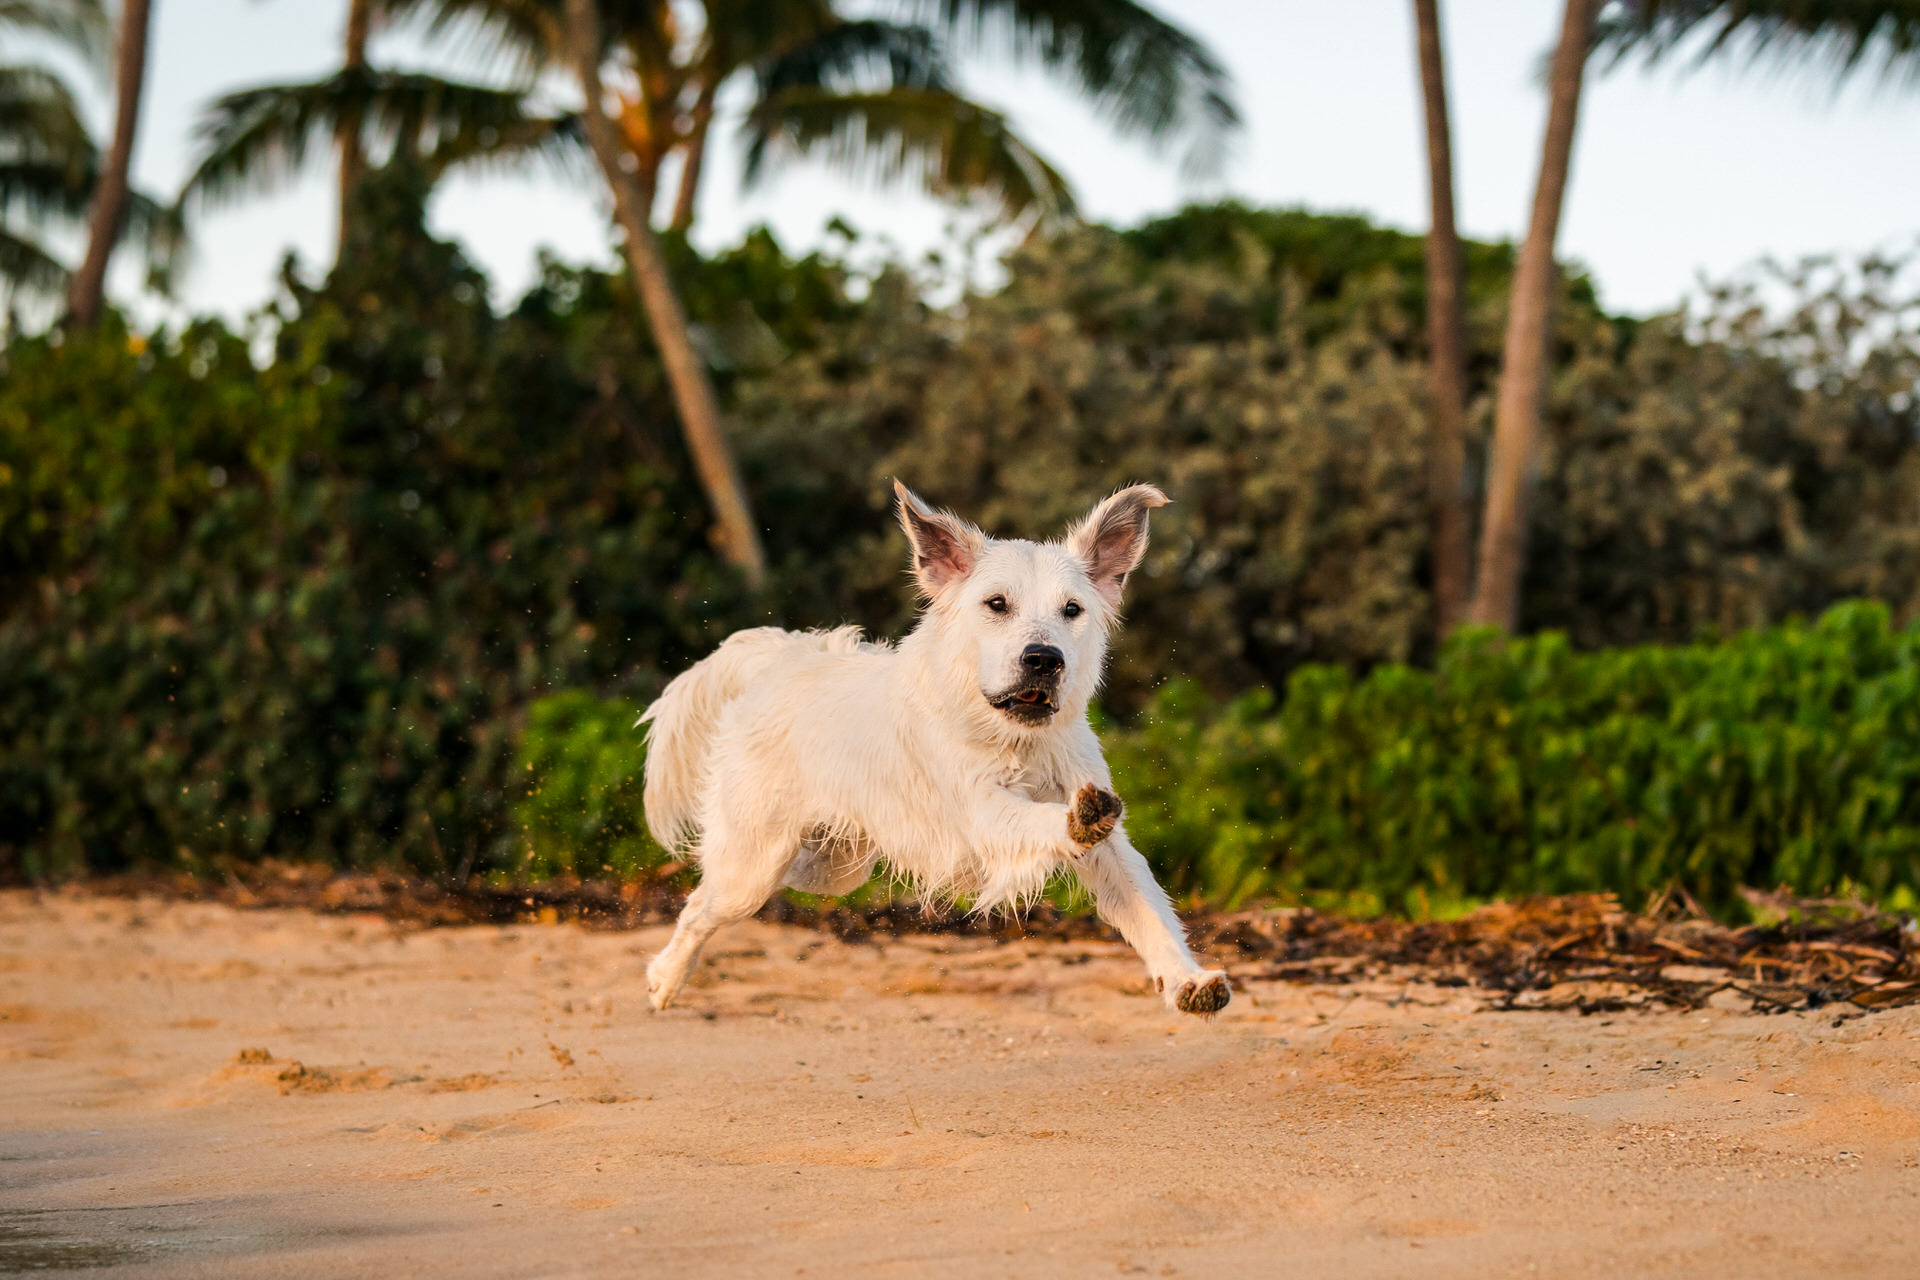 White dog running on beach at sunset.